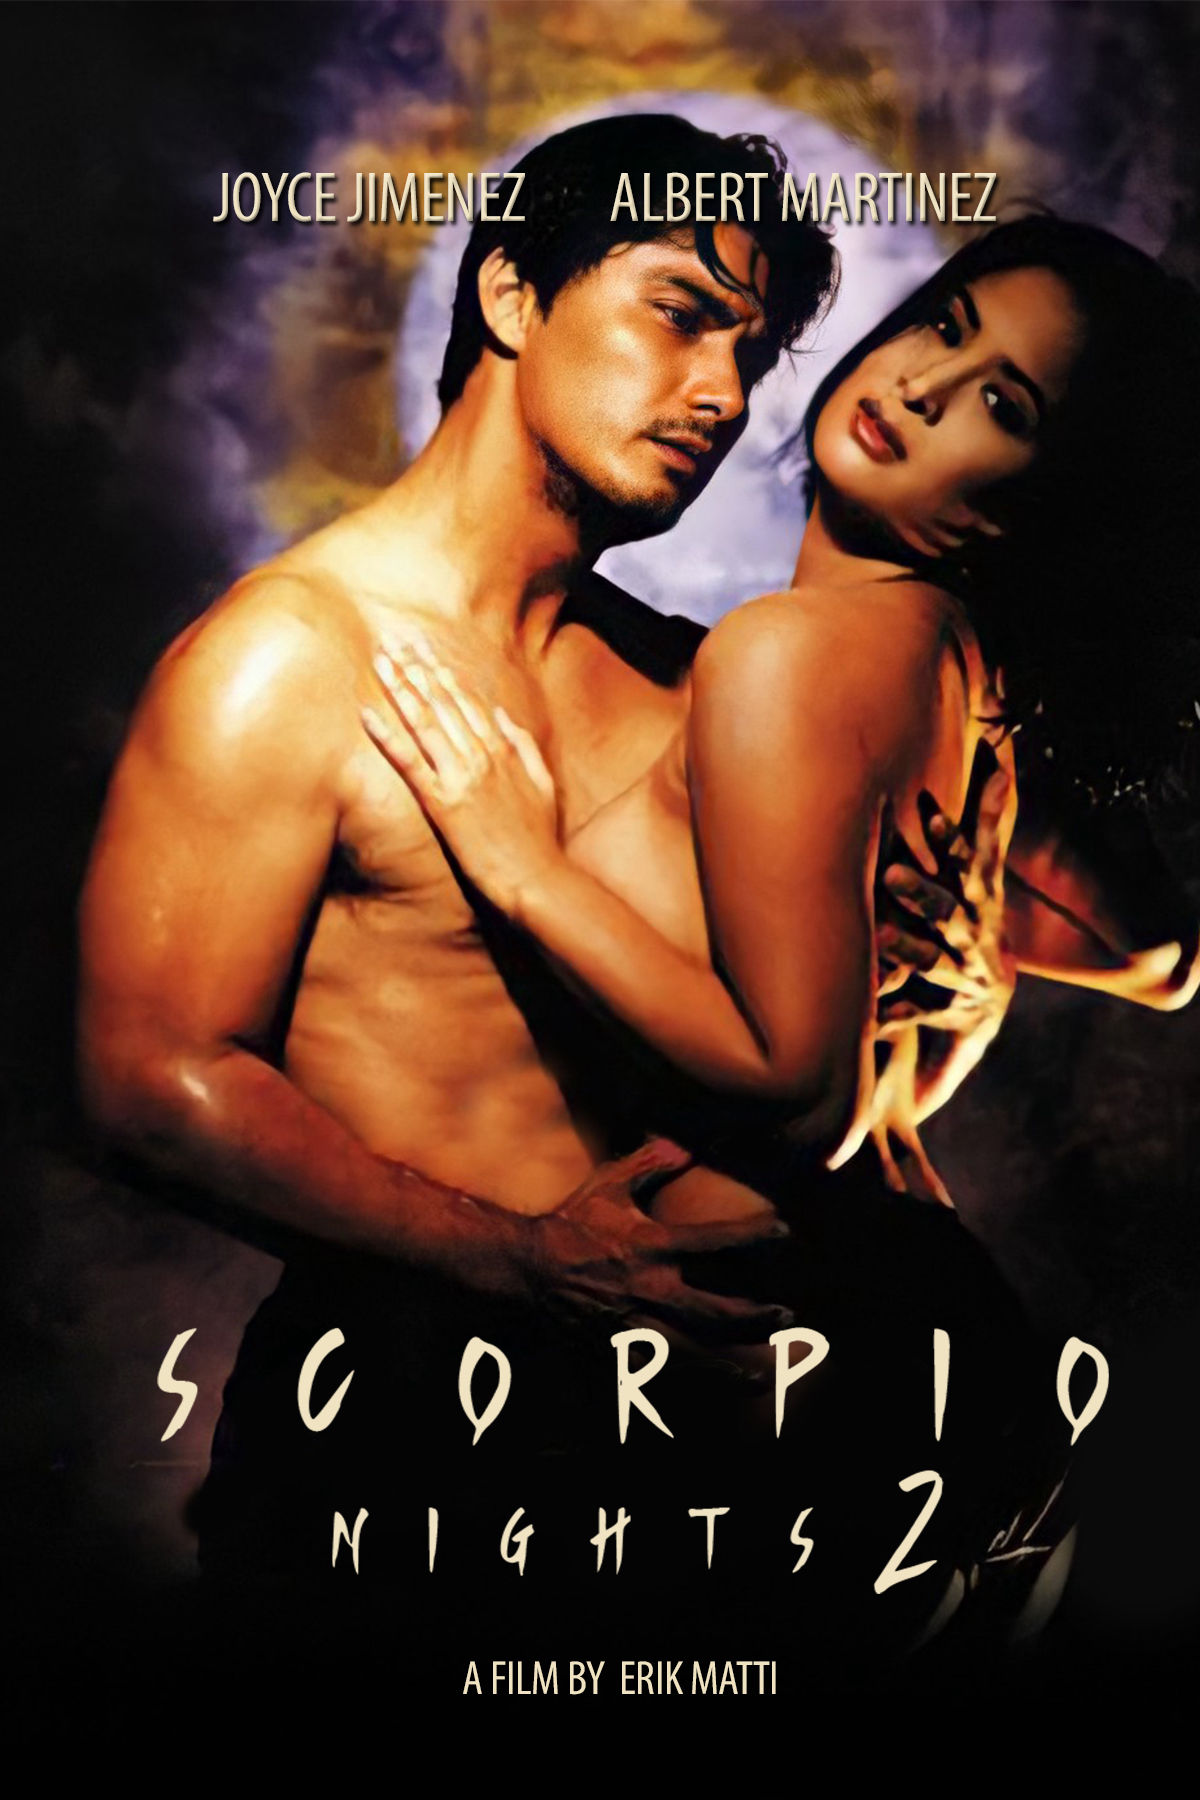 Scorpio Nights 2 (1999) Screenshot 1